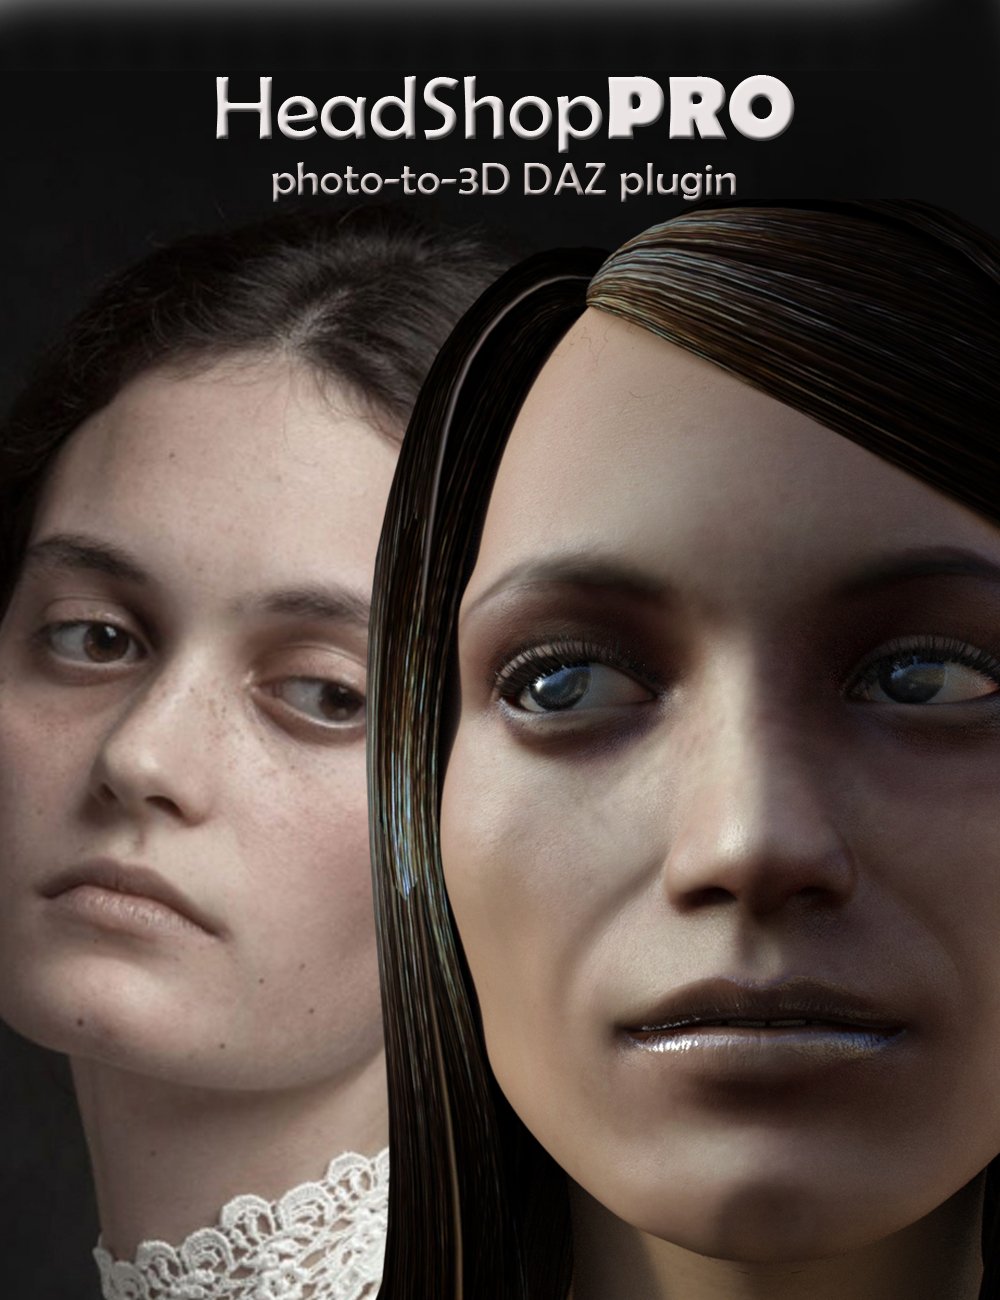 HeadShopPRO - DAZ Studio Plugin (WIN) by: Abalone LLC, 3D Models by Daz 3D